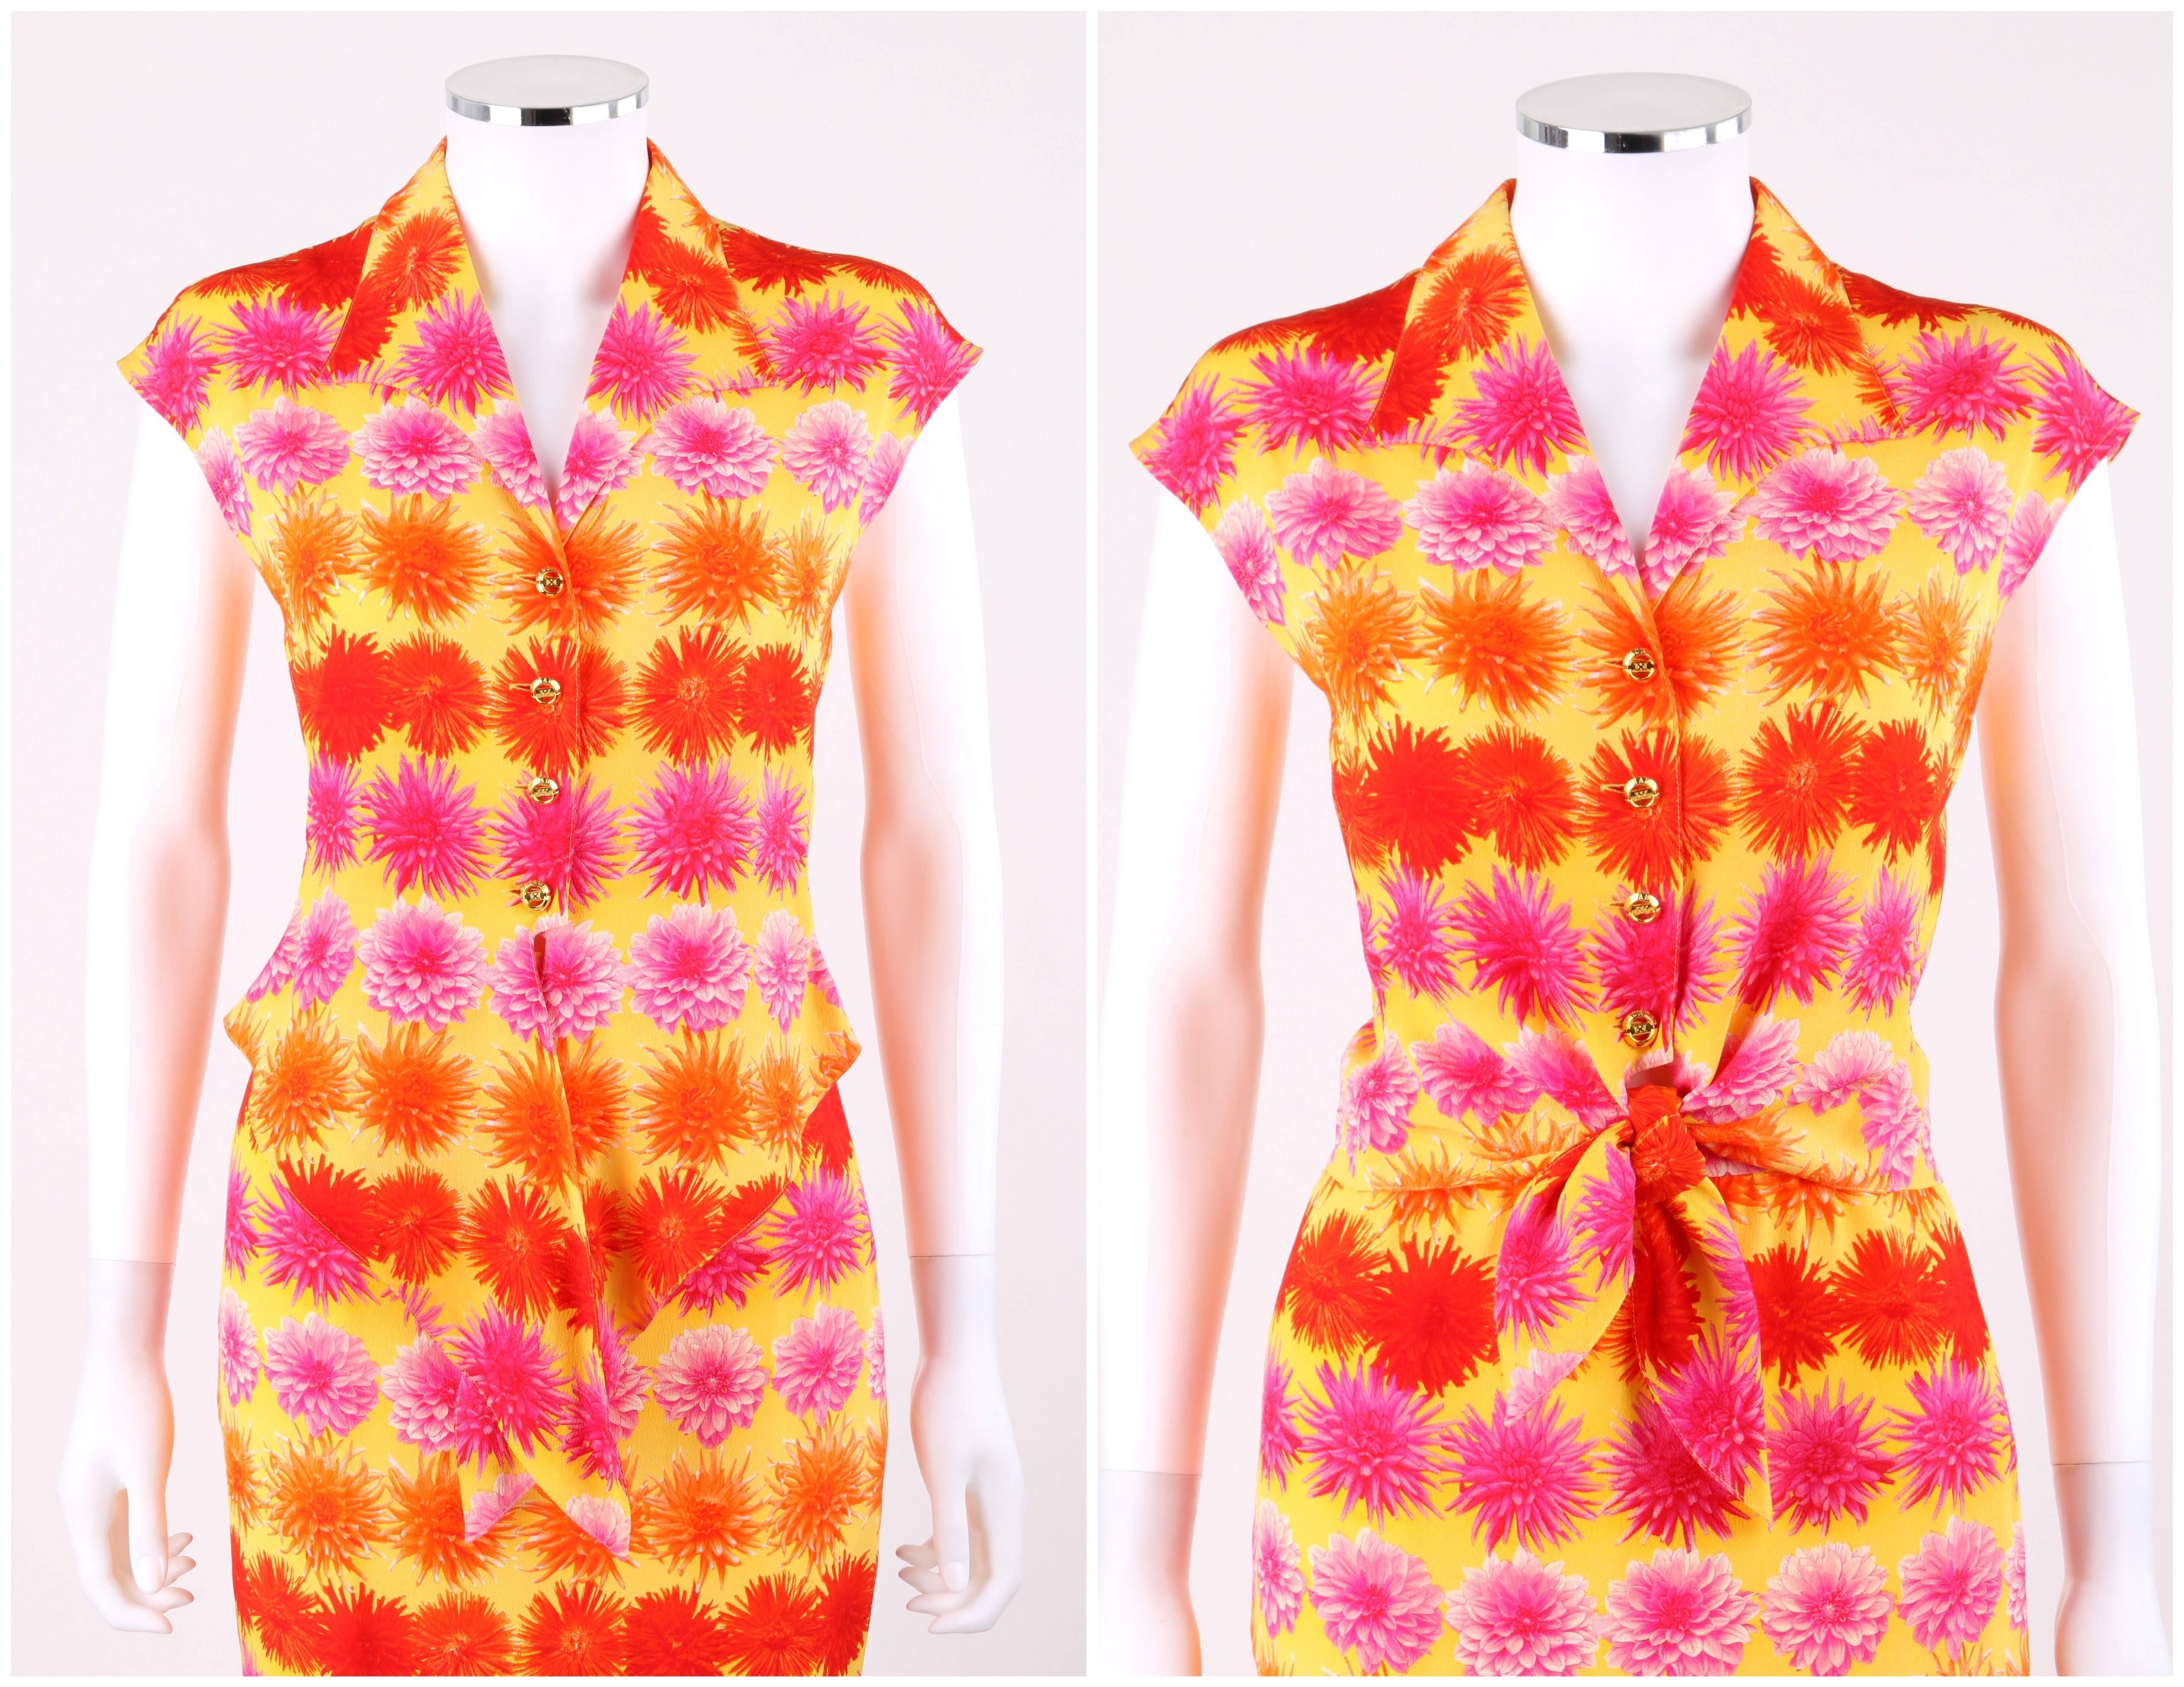 Escada Margaretha Ley c.1990's zwei Stück Blumendruck Seide Krawatte vorne Bluse Rock Anzug Set; Neu mit Tags. Mehrfarbiger, kräftiger Blumendruck in Rot-, Pink- und Orangetönen auf gelber Seide. Spitzer Reverskragen. Verlängerte Schulter. Vier